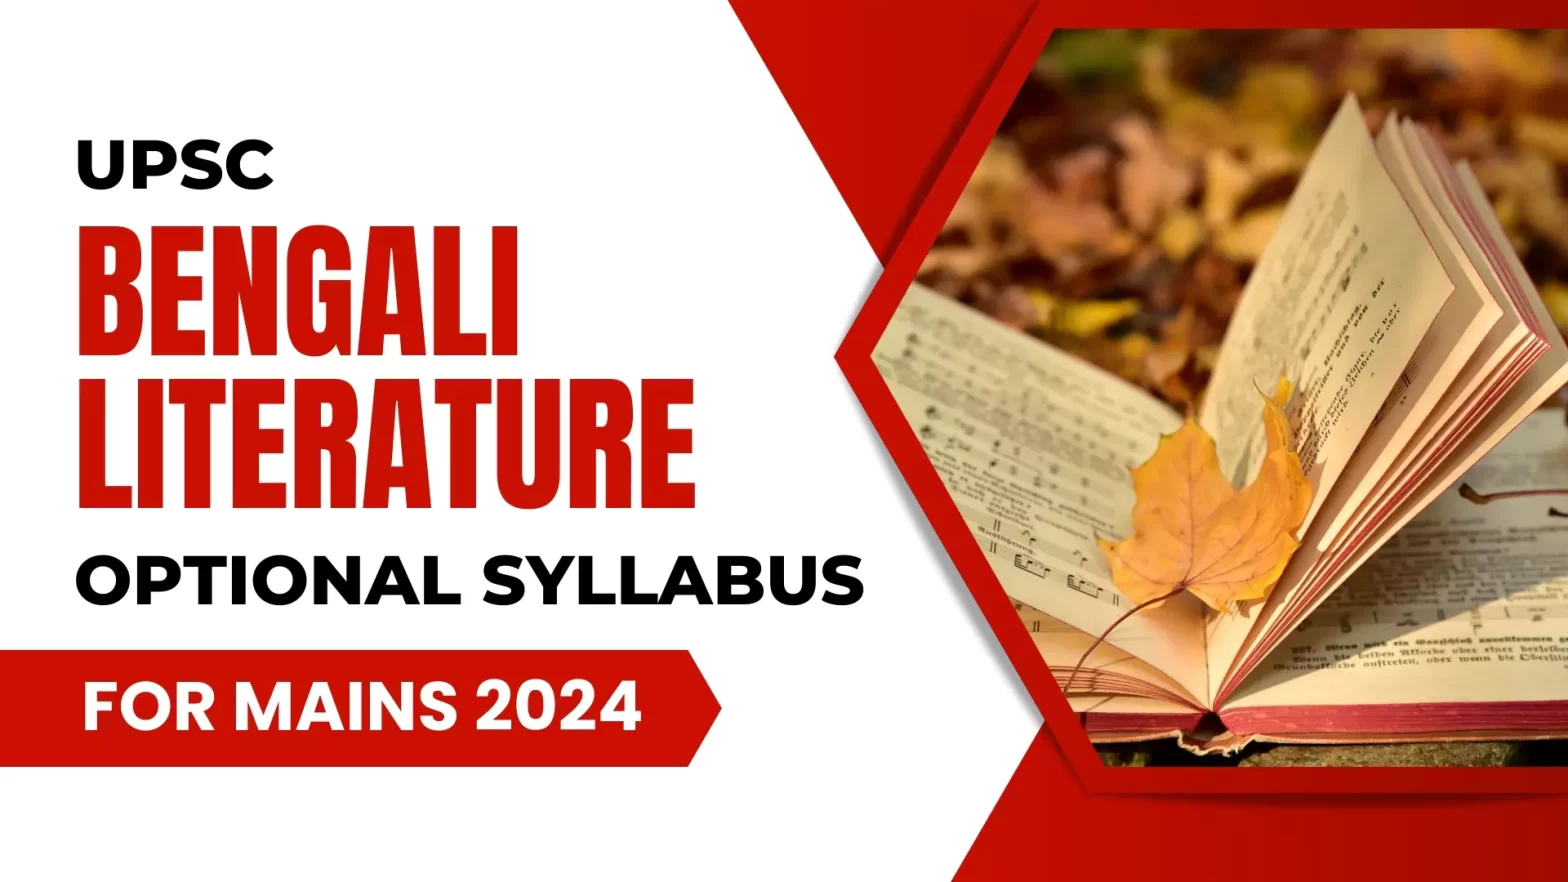 UPSC Bengali Literature Optional Syllabus for Mains 2024